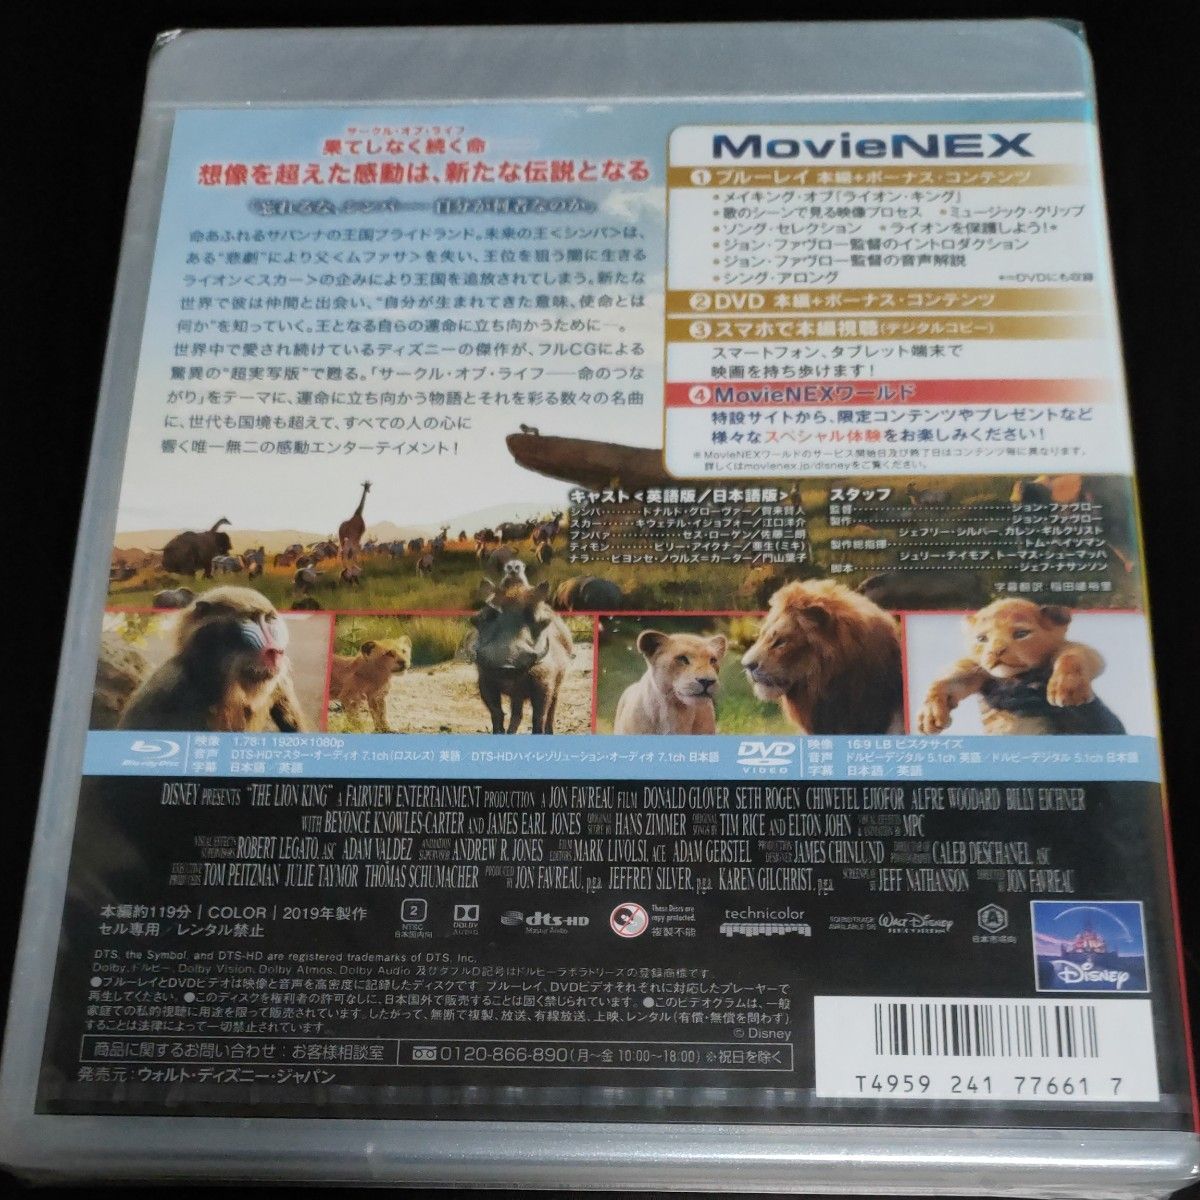 ライオンキング MovieNEX [ブルーレイ+DVD+デジタルコピー+MovieNEXワールド] [Blu-ray]　新品未開封